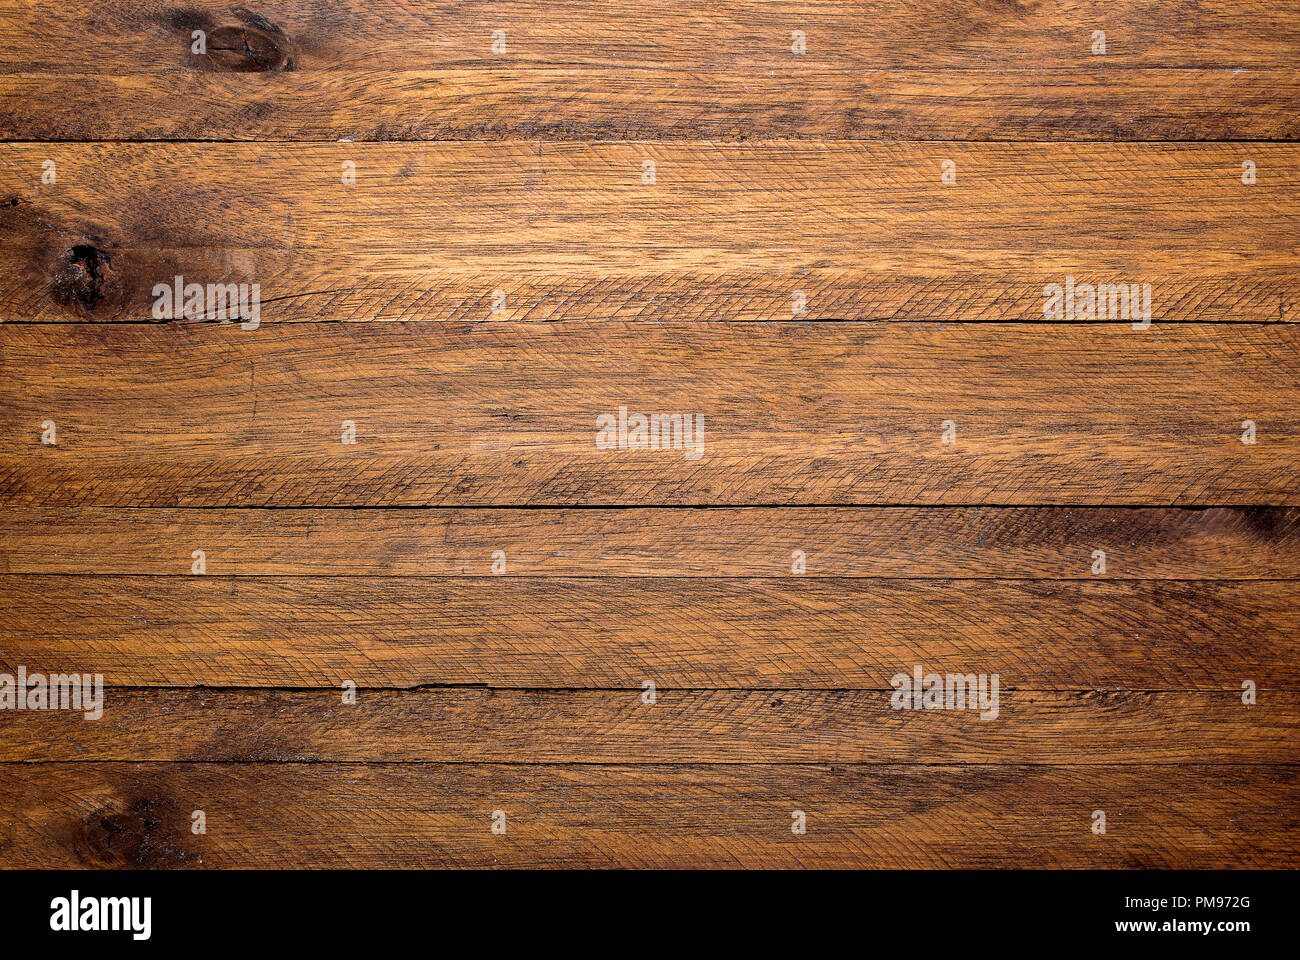 Holz Tisch Hintergrund mit viel Kontrast Holz Textur Stockfotografie - Alamy